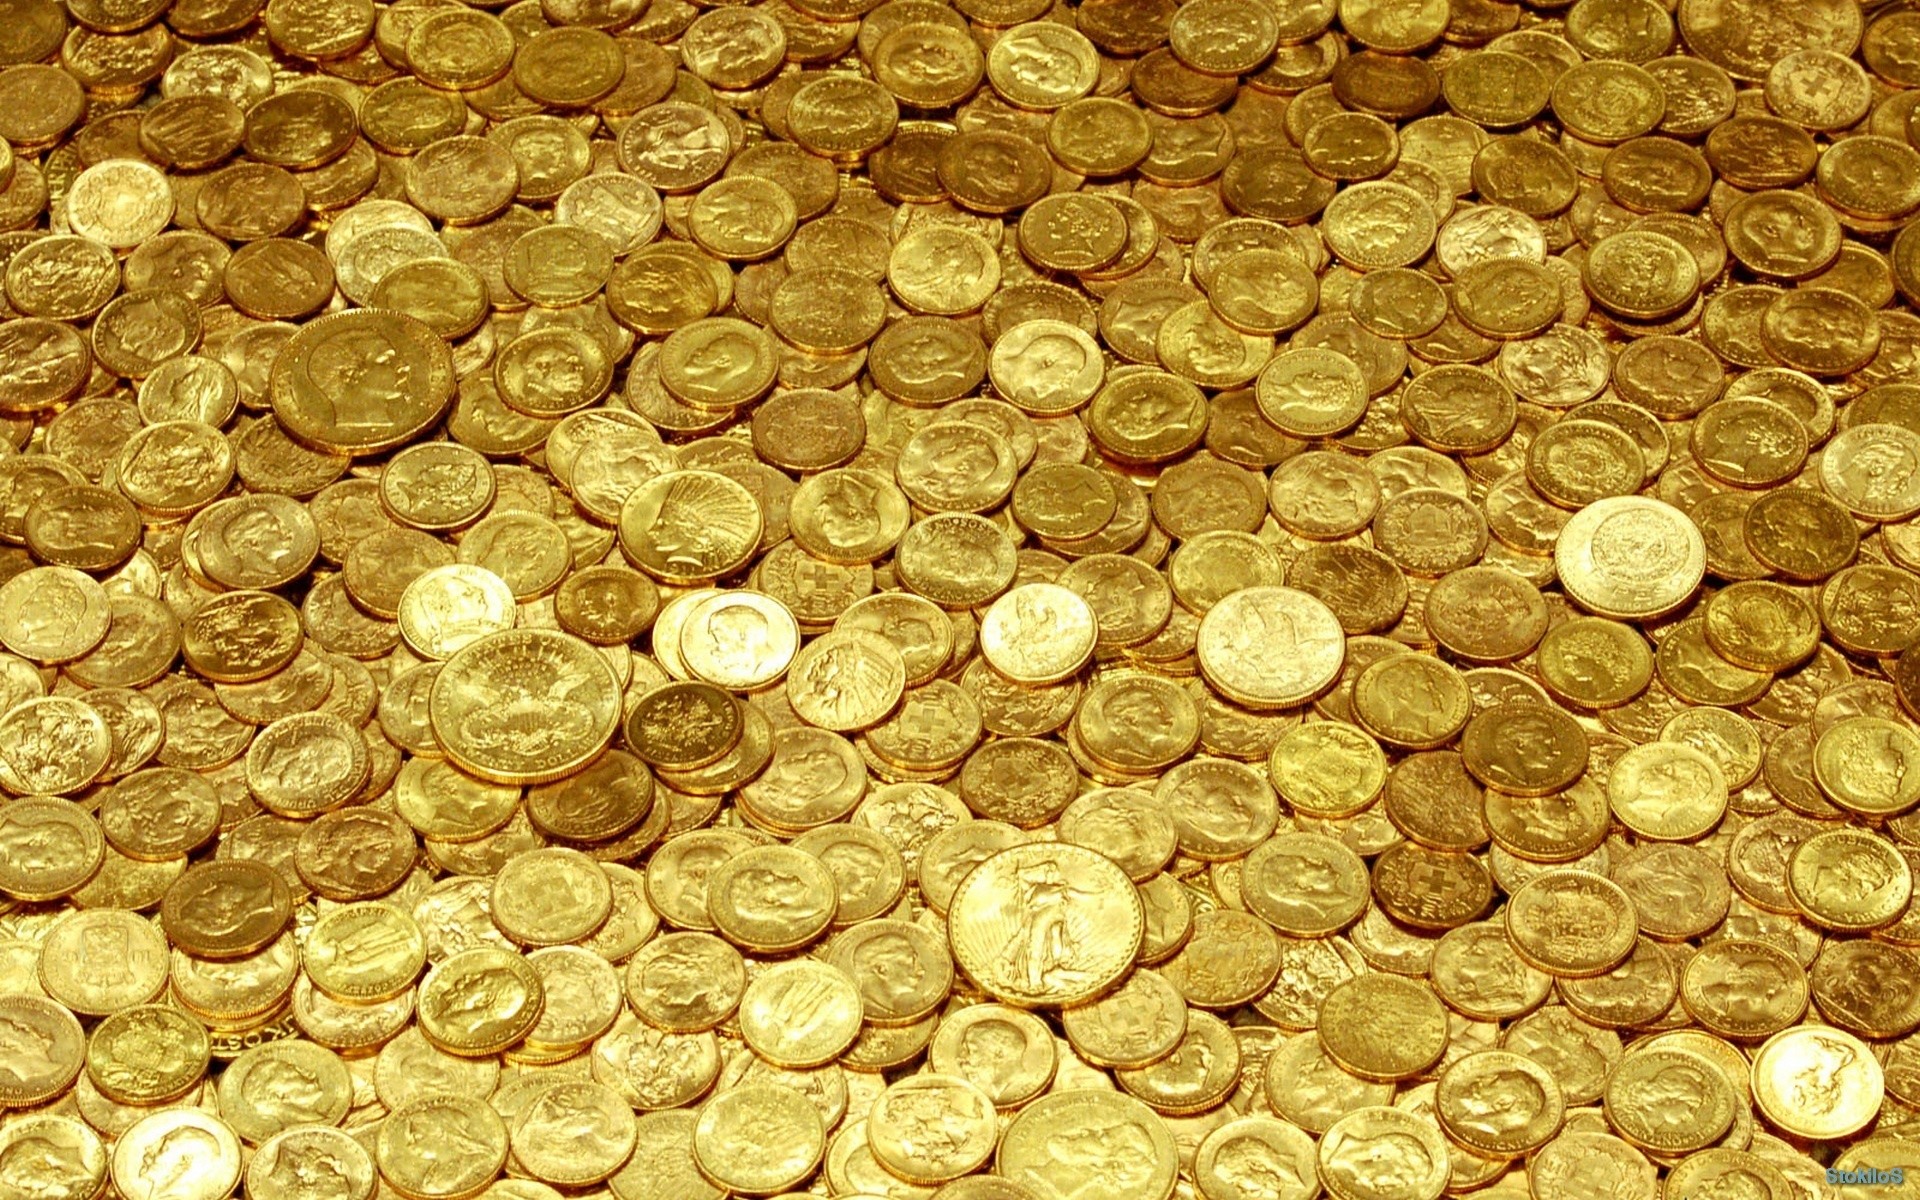 1920x1200 ÐÐ¾Ð½ÐµÑÑ - Ð¢ÐµÐºÑÑÑÑÑ Ð¸ ÑÐ·Ð¾ÑÑ - ÐÑÐºÑÑÑÐºÐ¸ | Money, gold | Pinterest | Catalog